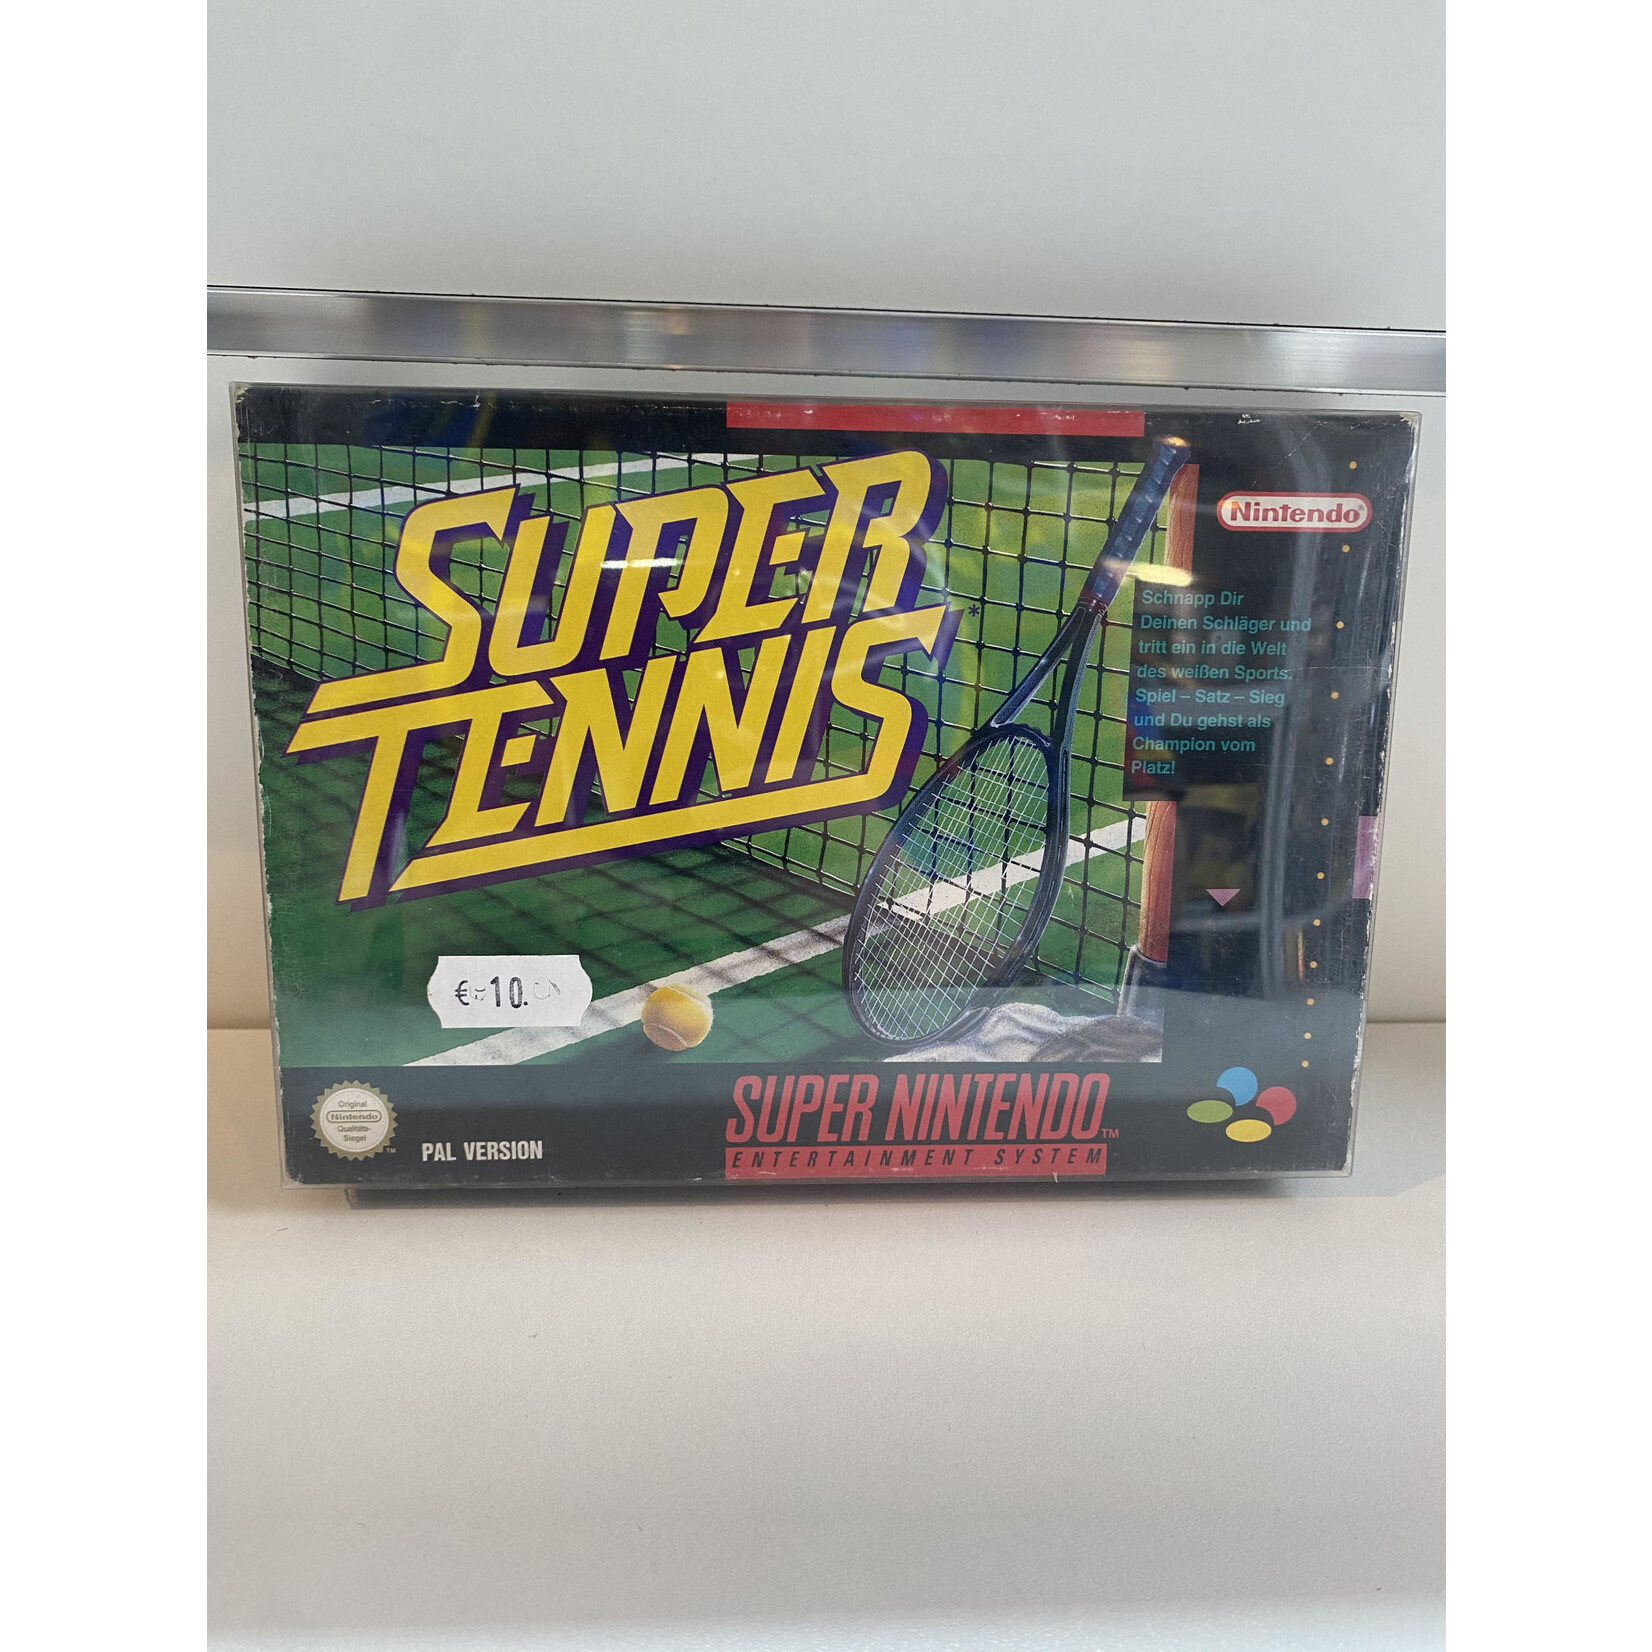 Super tennis